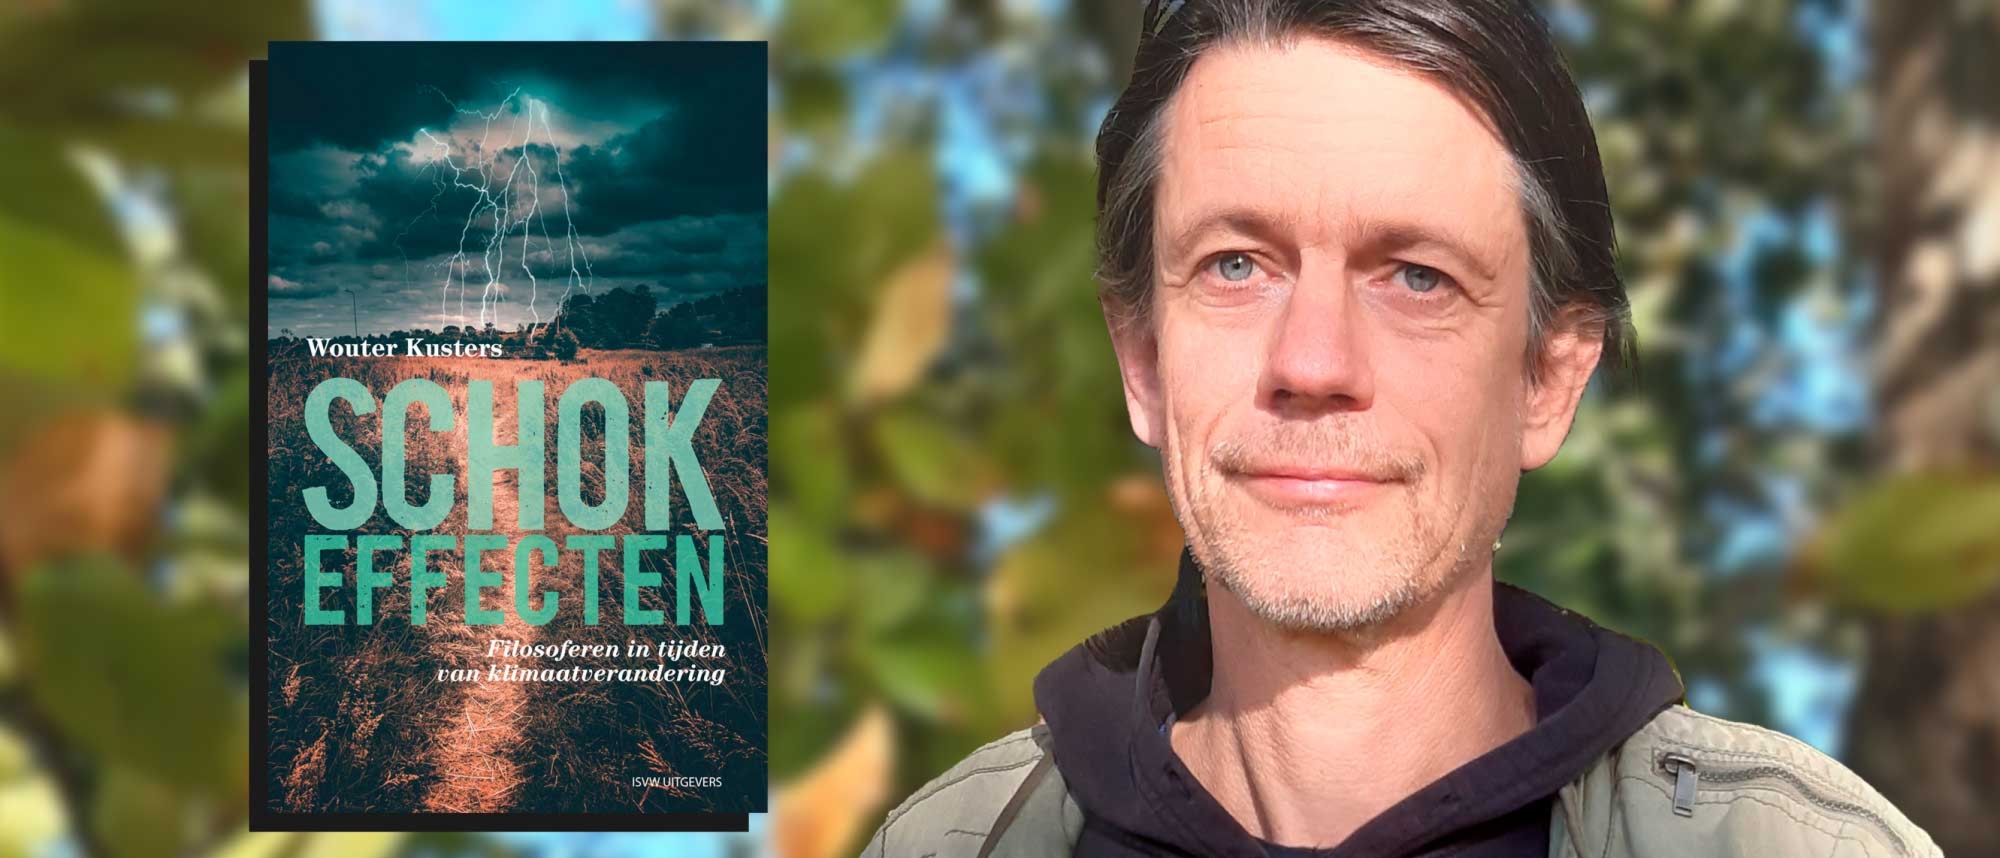 Boekpresentatie Schokeffecten- Filosoferen in tijden van klimaatverandering door Wouter Kusters